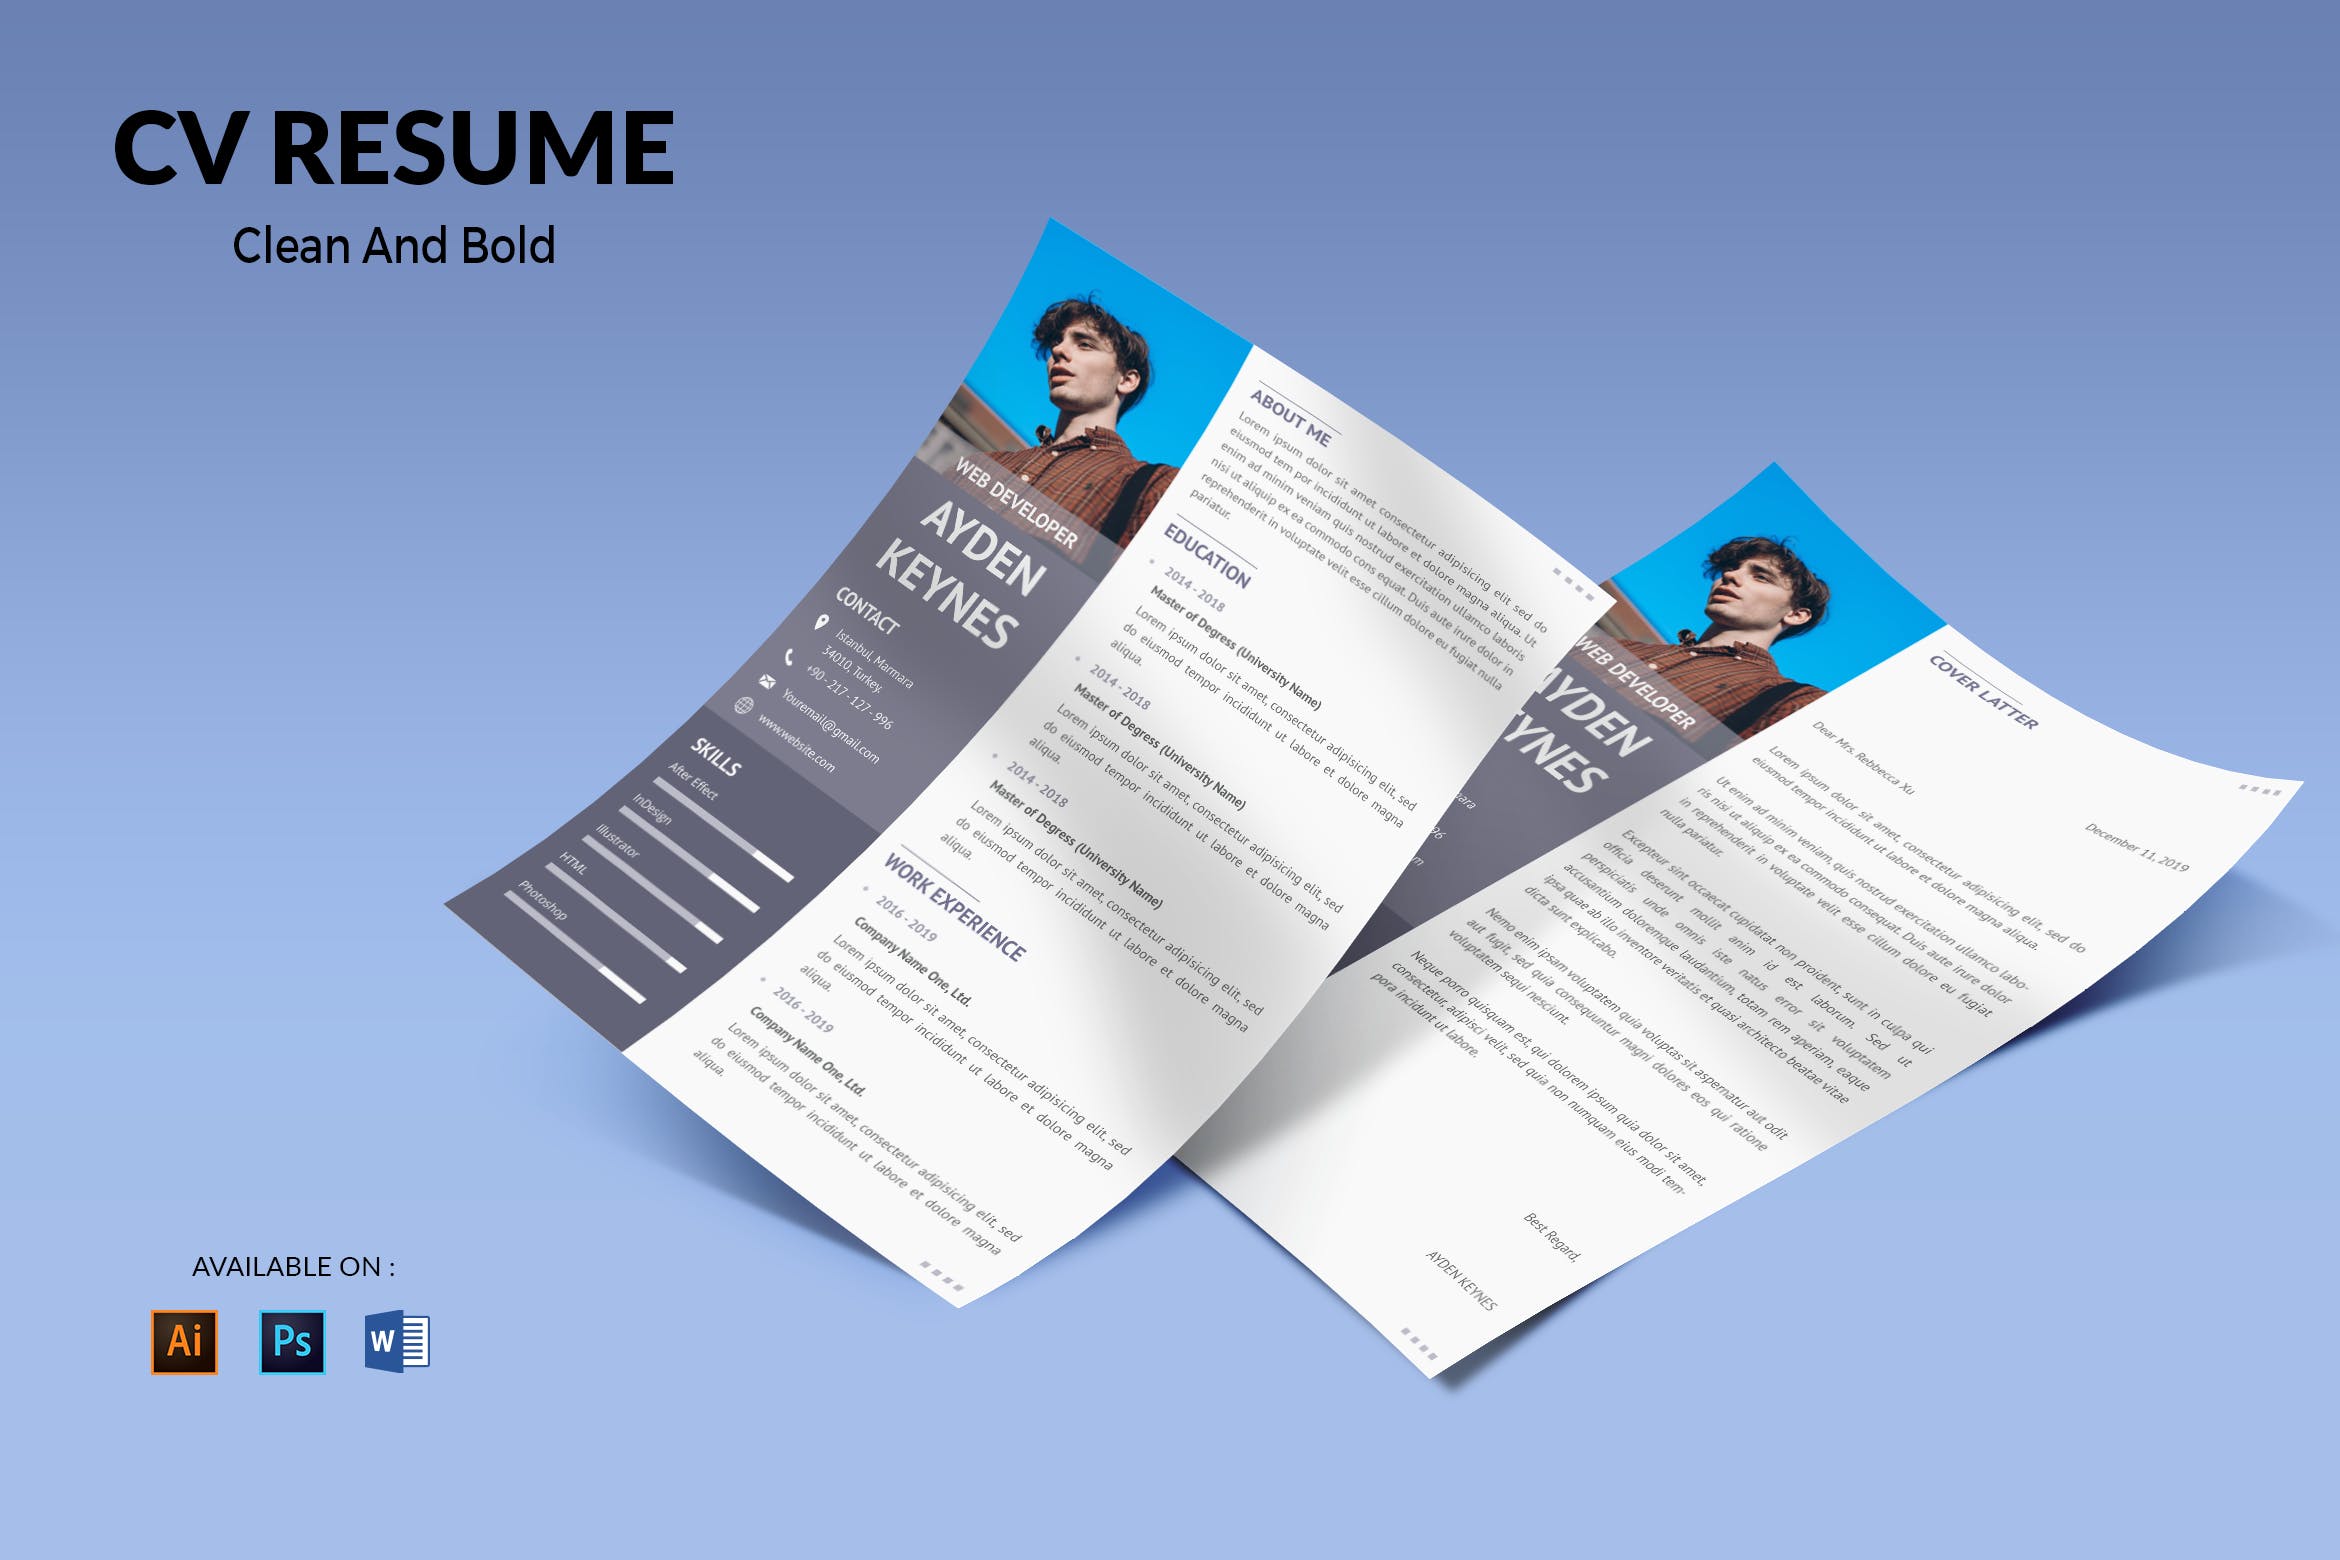 网页开发职位电子第一素材精选简历模板 CV Resume Simple And Elegant插图